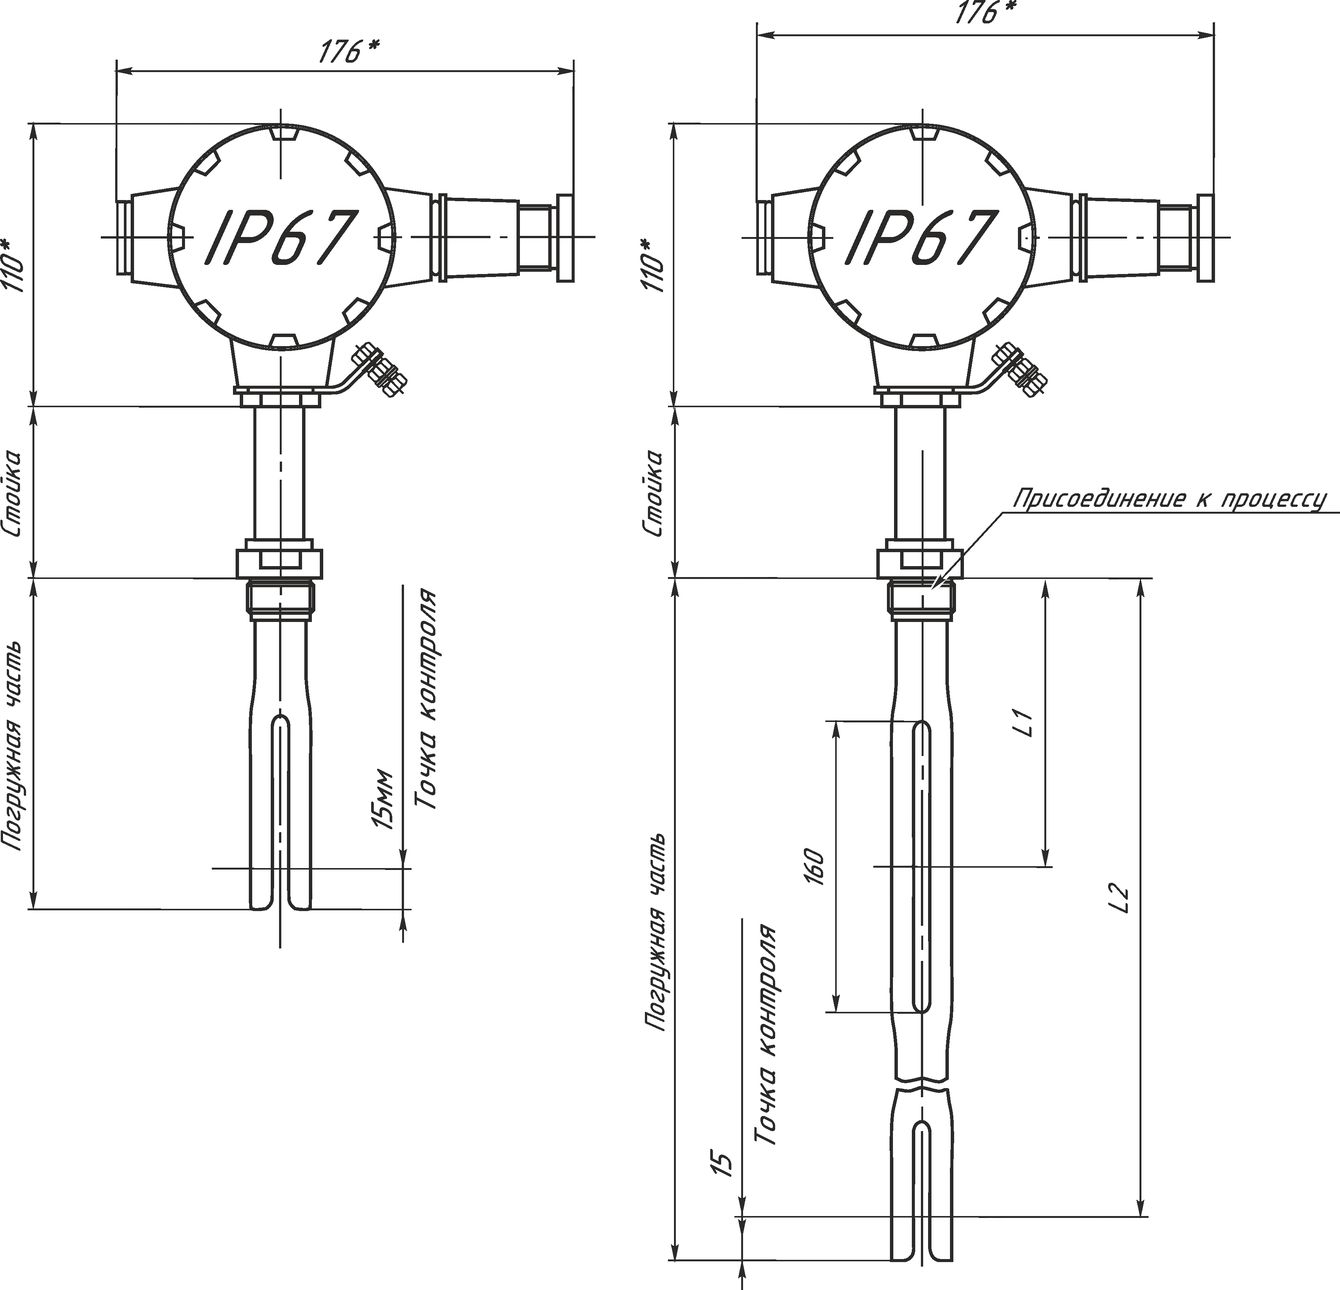 Чертеж ультразвукового сигнализатора уровня жидкости с вилочным чувствительным элементом СЖУ-1-В